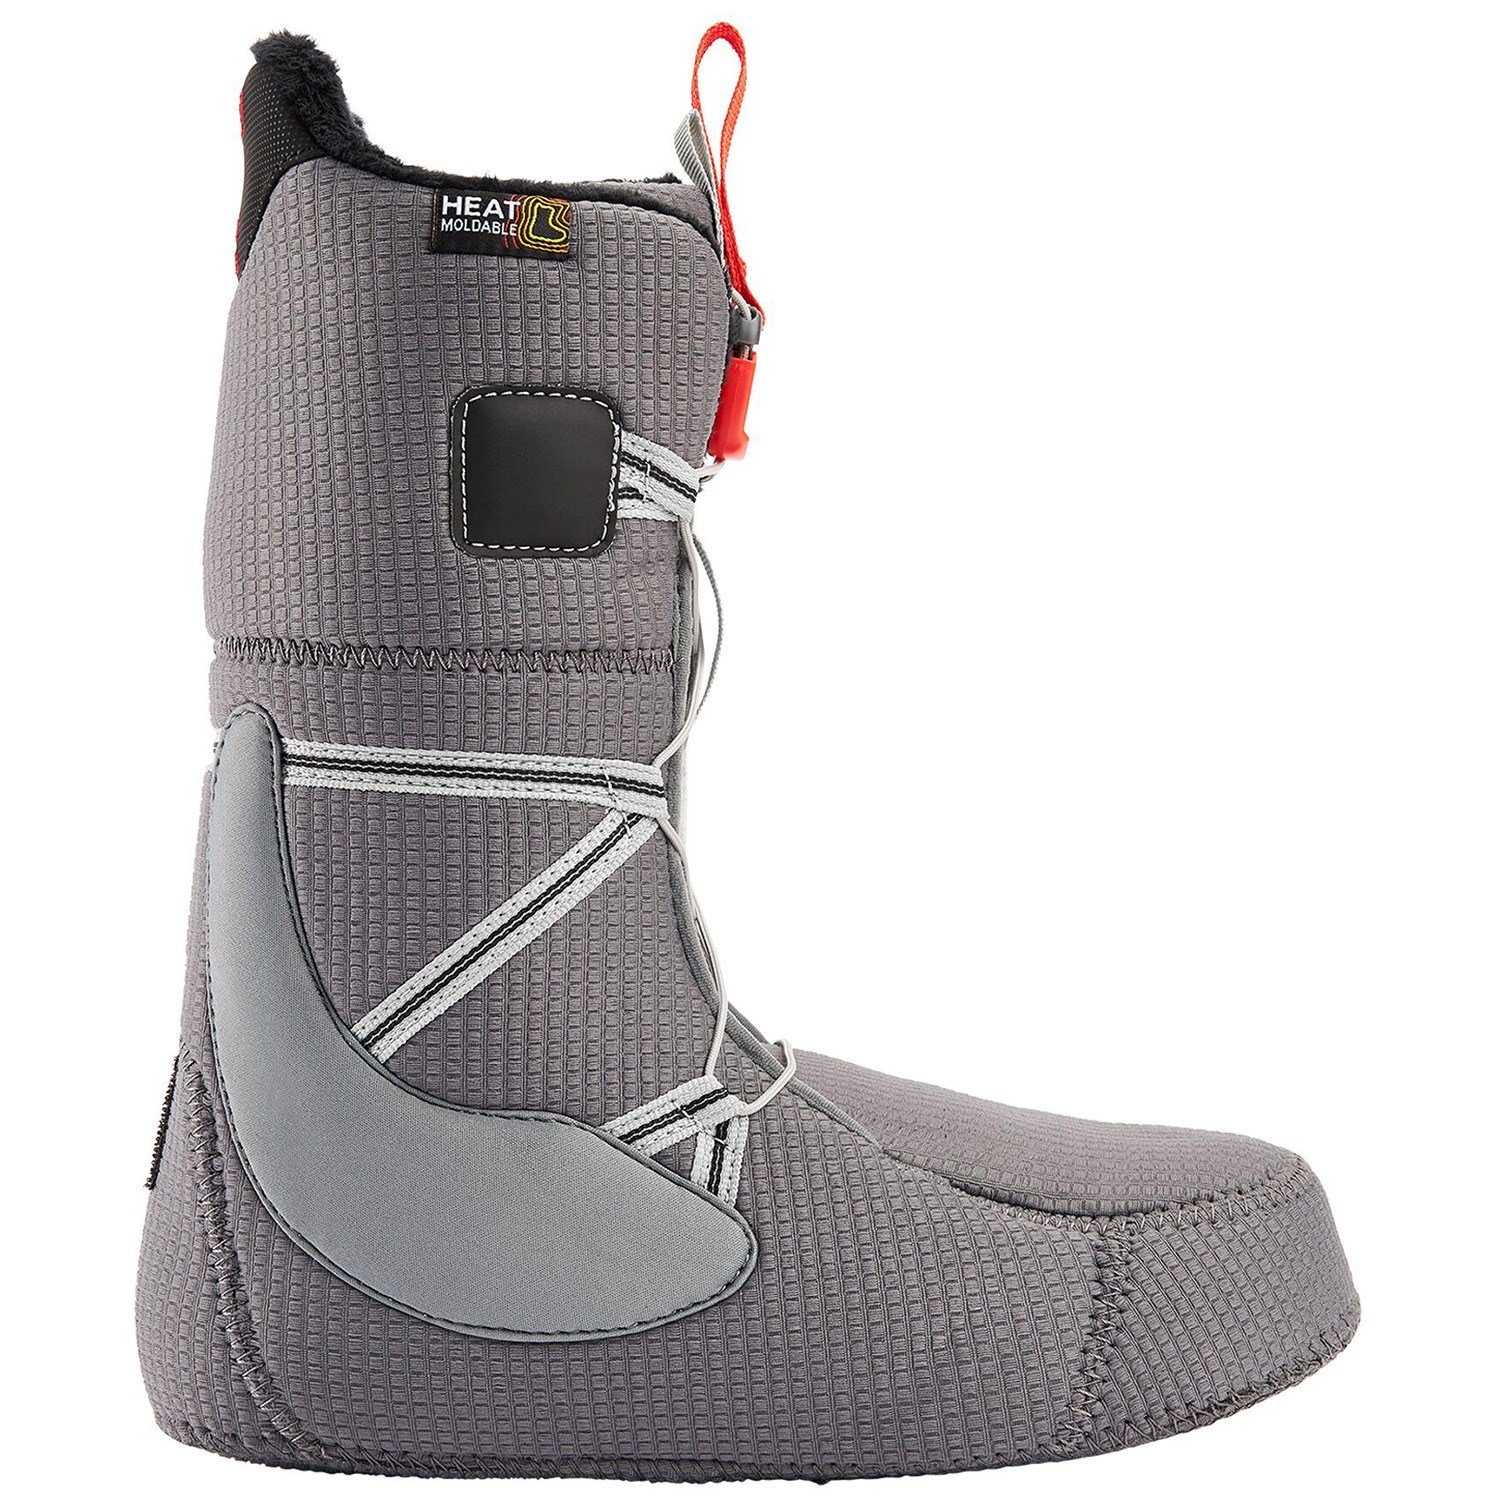 Burton Moto Boa Snowboard Boots 2021 | evo